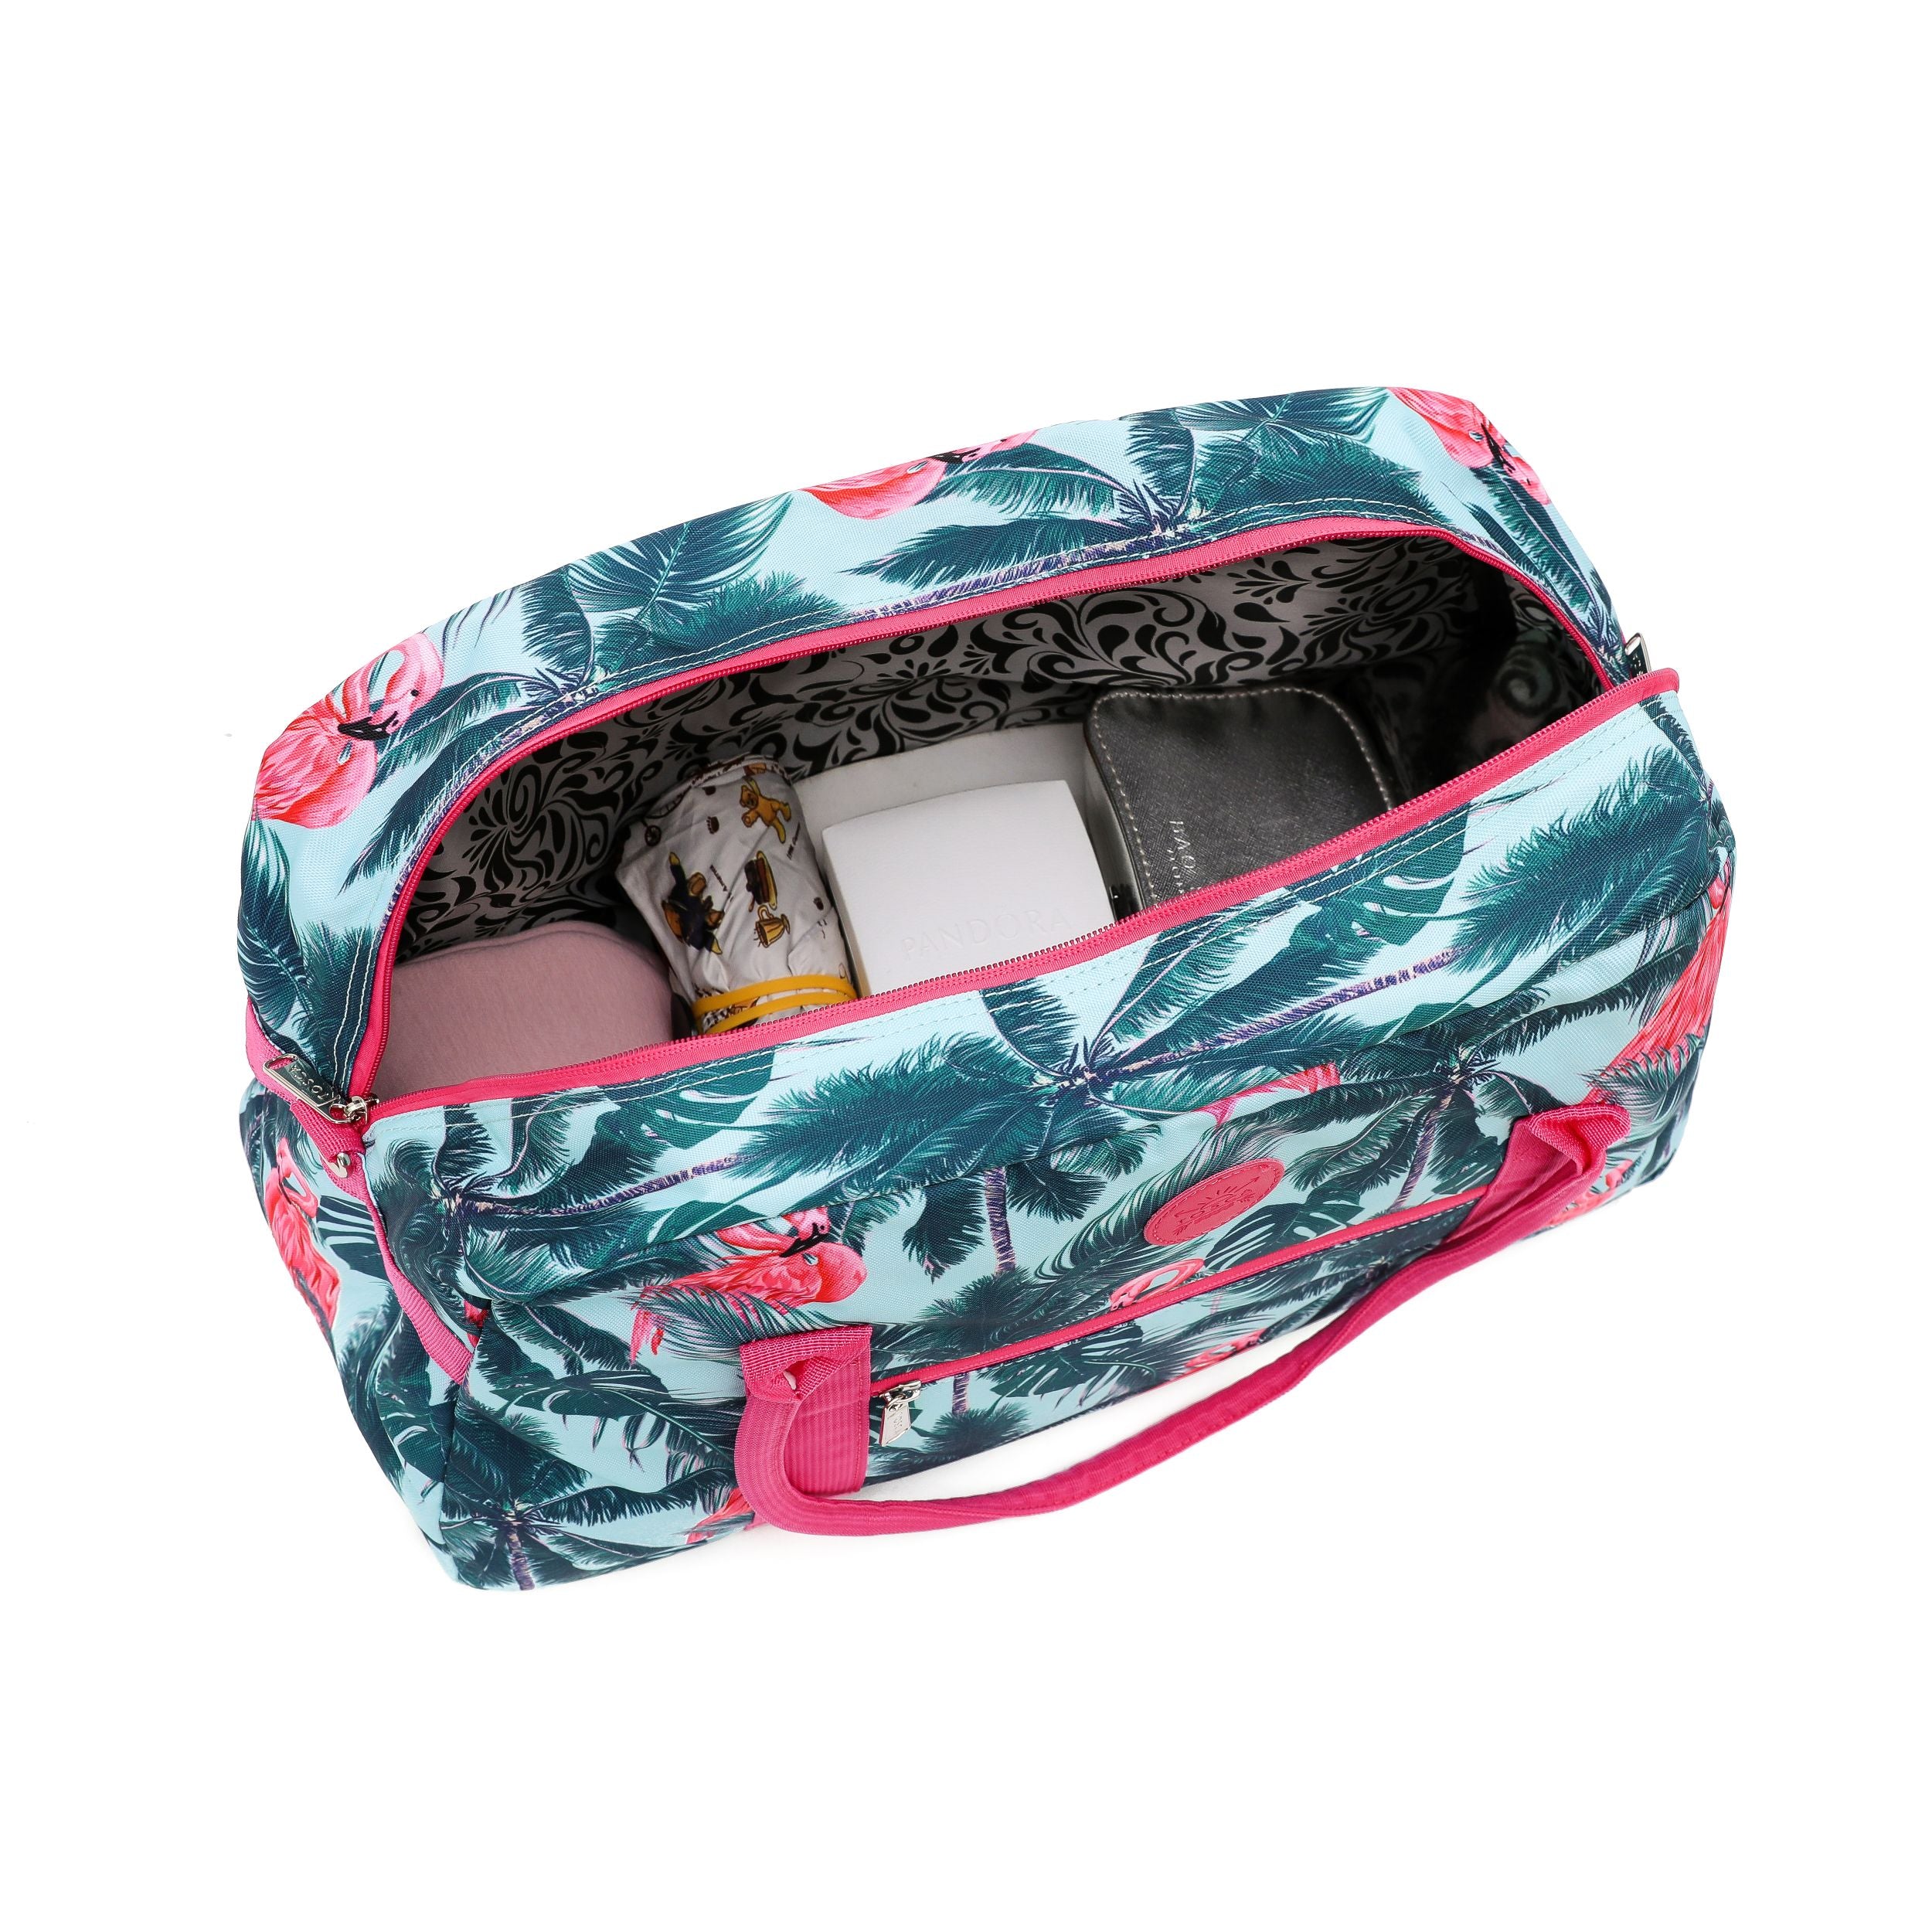 Tosca - TCA935 Fashion Tote/Duffle Bag - Flamingo-3